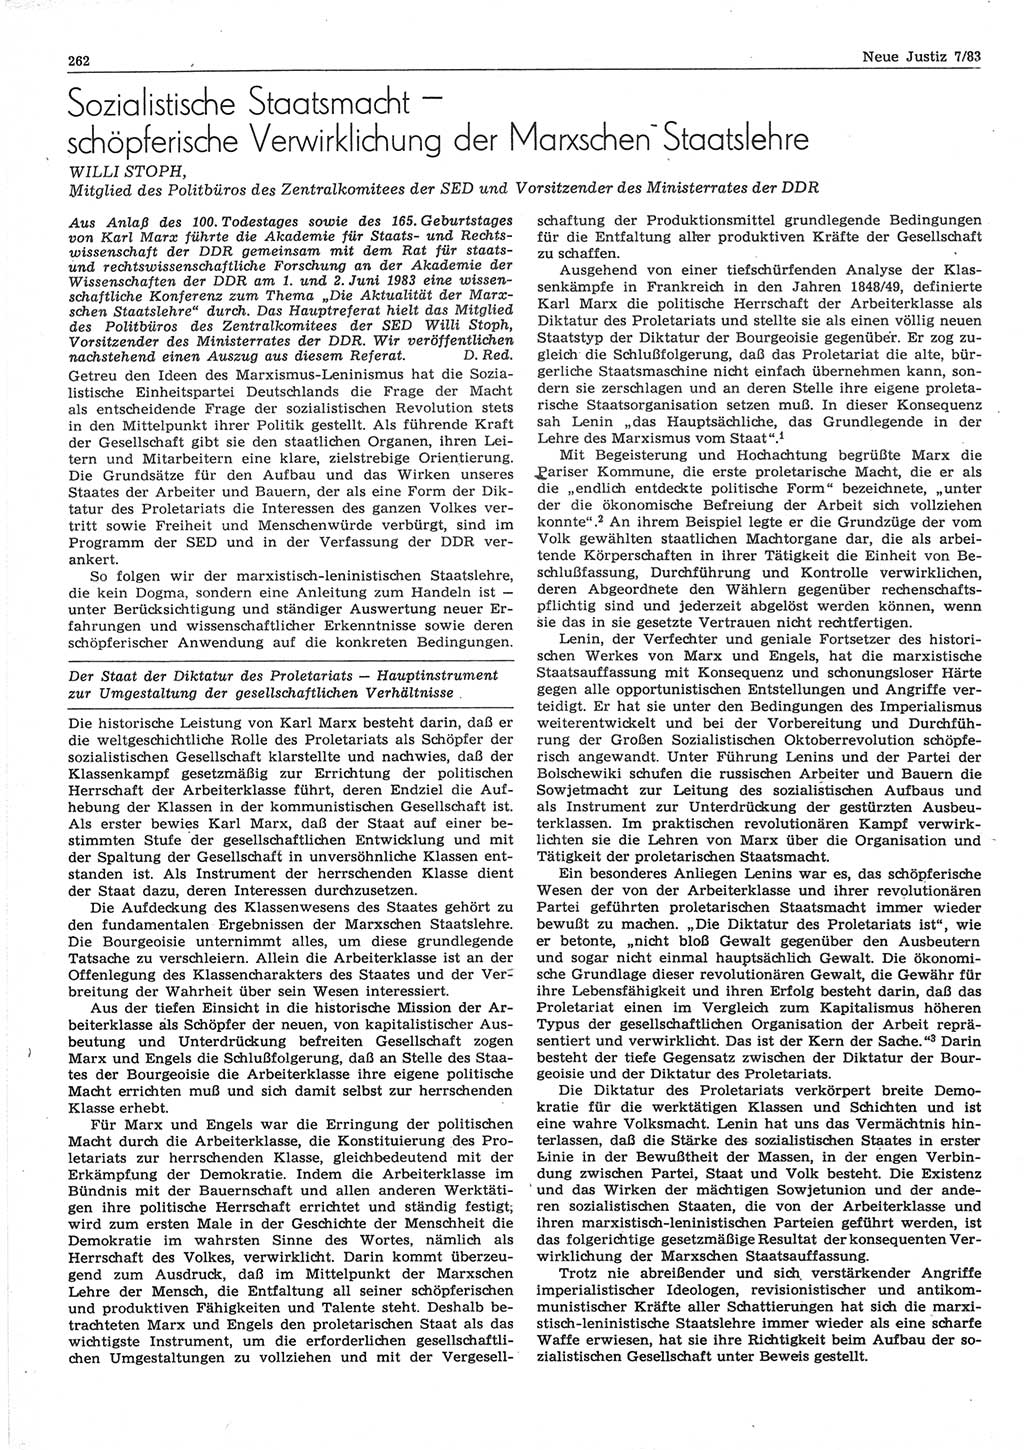 Neue Justiz (NJ), Zeitschrift für sozialistisches Recht und Gesetzlichkeit [Deutsche Demokratische Republik (DDR)], 37. Jahrgang 1983, Seite 262 (NJ DDR 1983, S. 262)